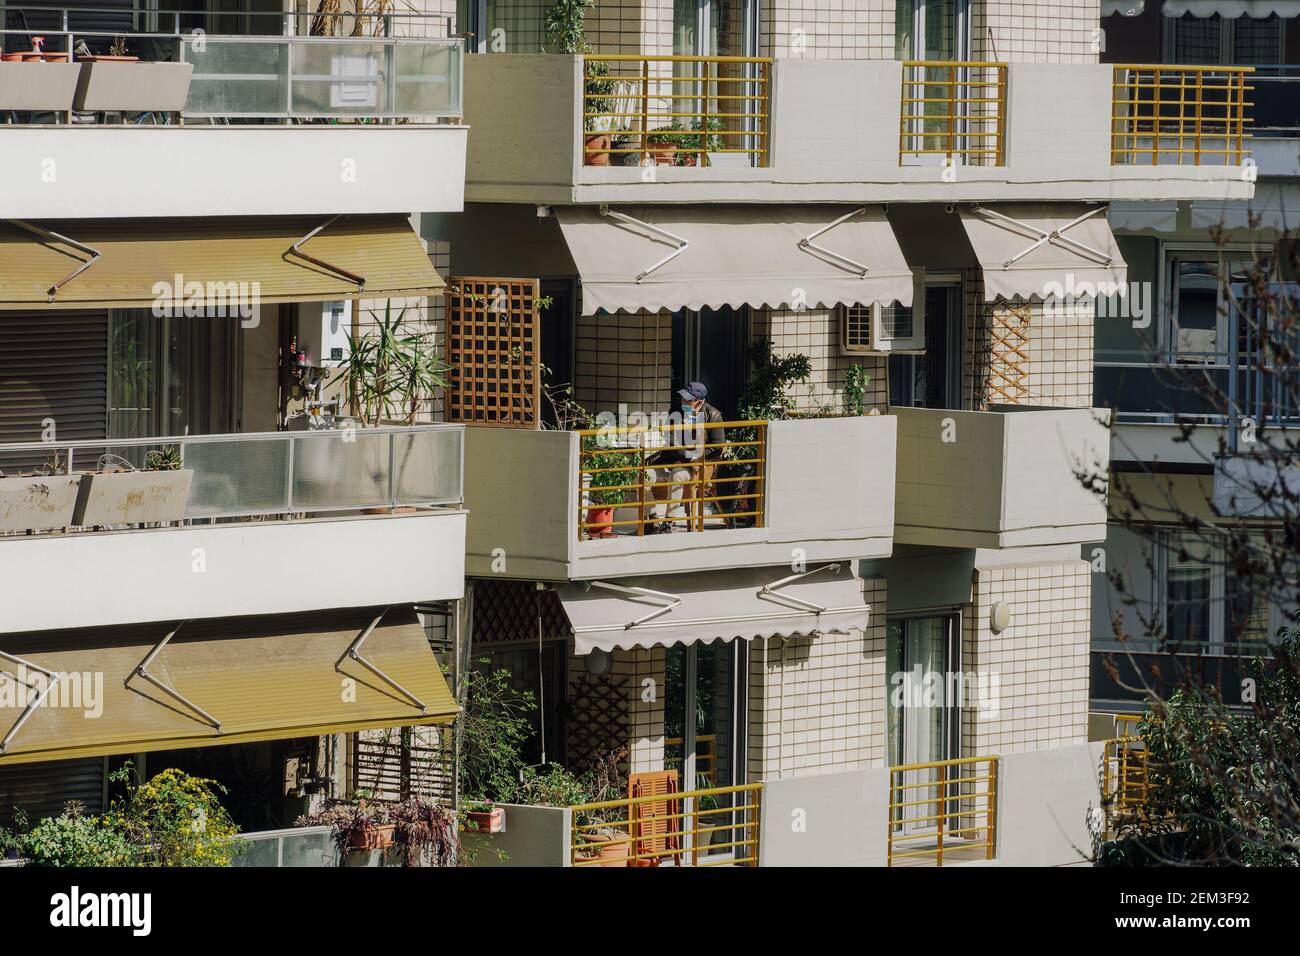 Vecchio uomo che indossa una maschera chirurgica covid-19 al suo balcone. Giorno soleggiato vista di una persona non identificata con coronavirus viso protezione seduta sulla sua veranda in un ambiente urbano città a Salonicco, Grecia. Foto Stock